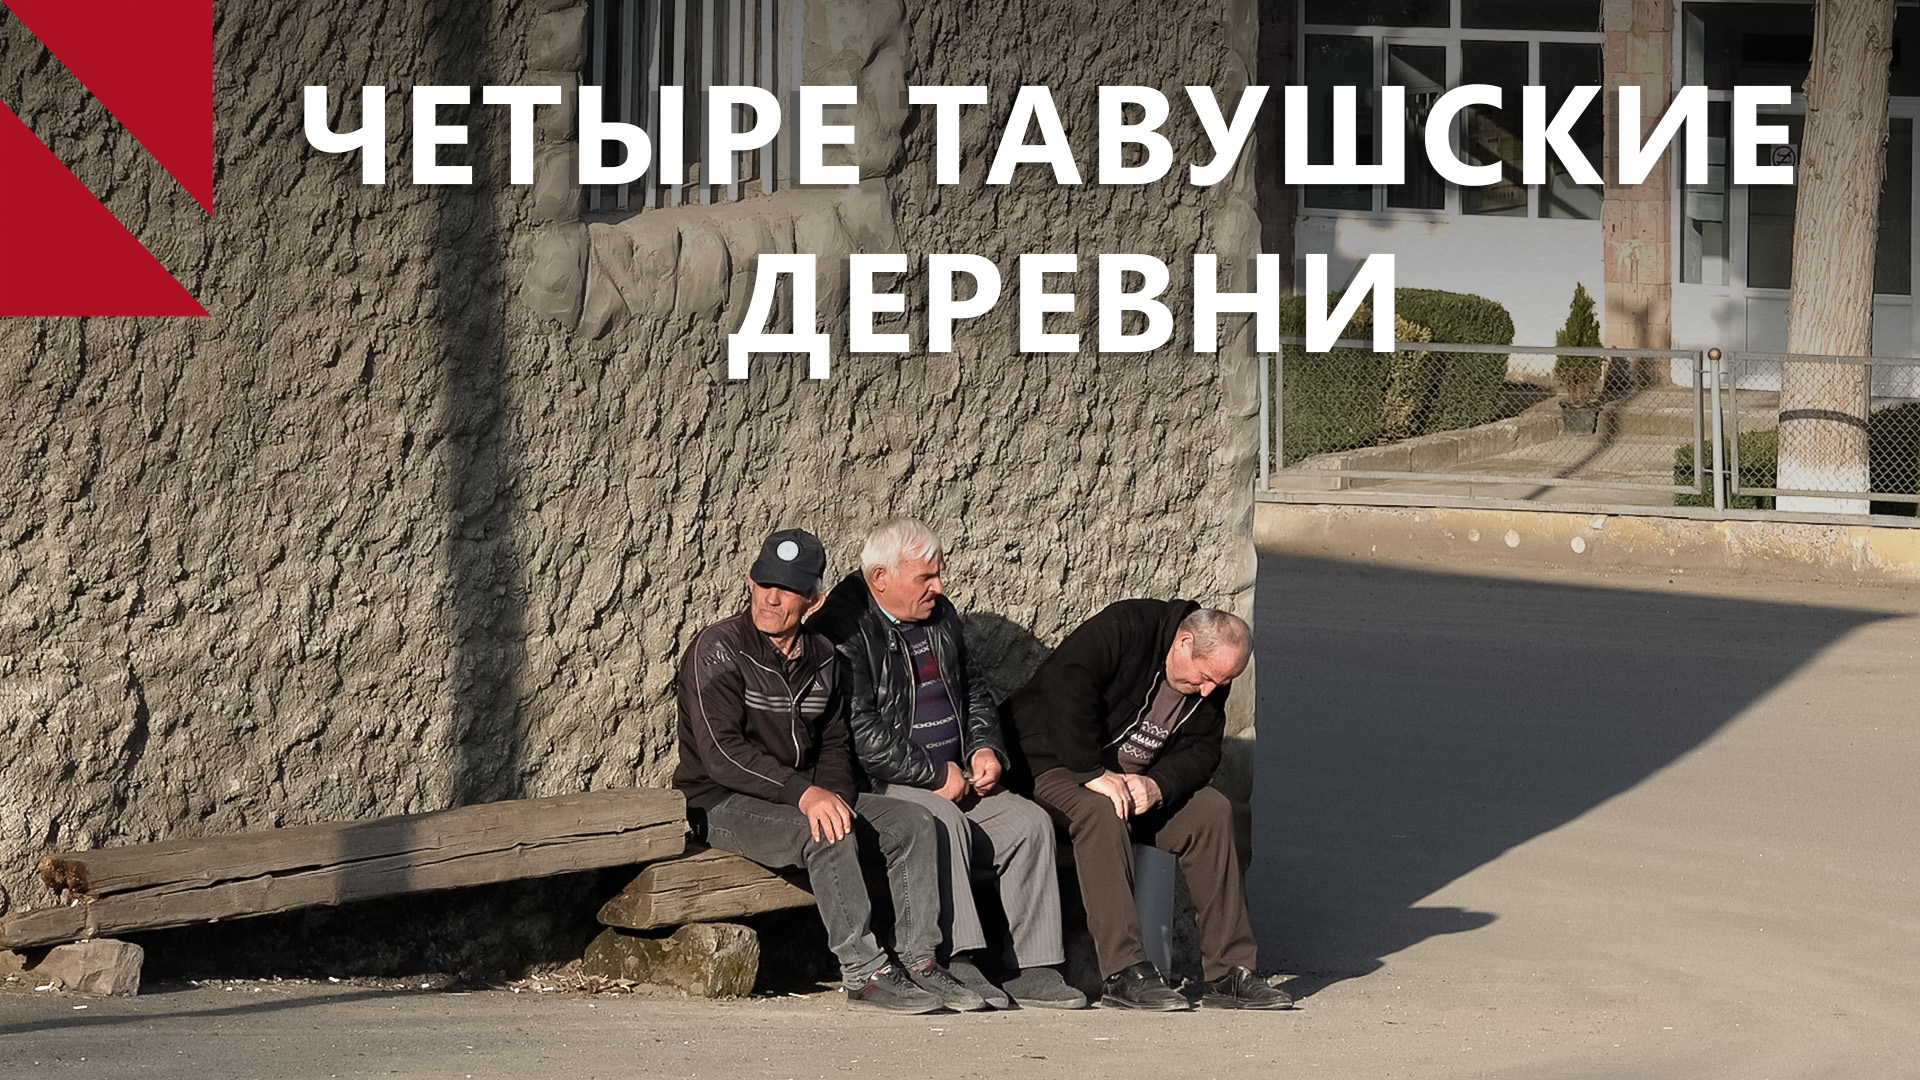 Жители тавушских деревень требуют у Азербайджана вернуть им земли